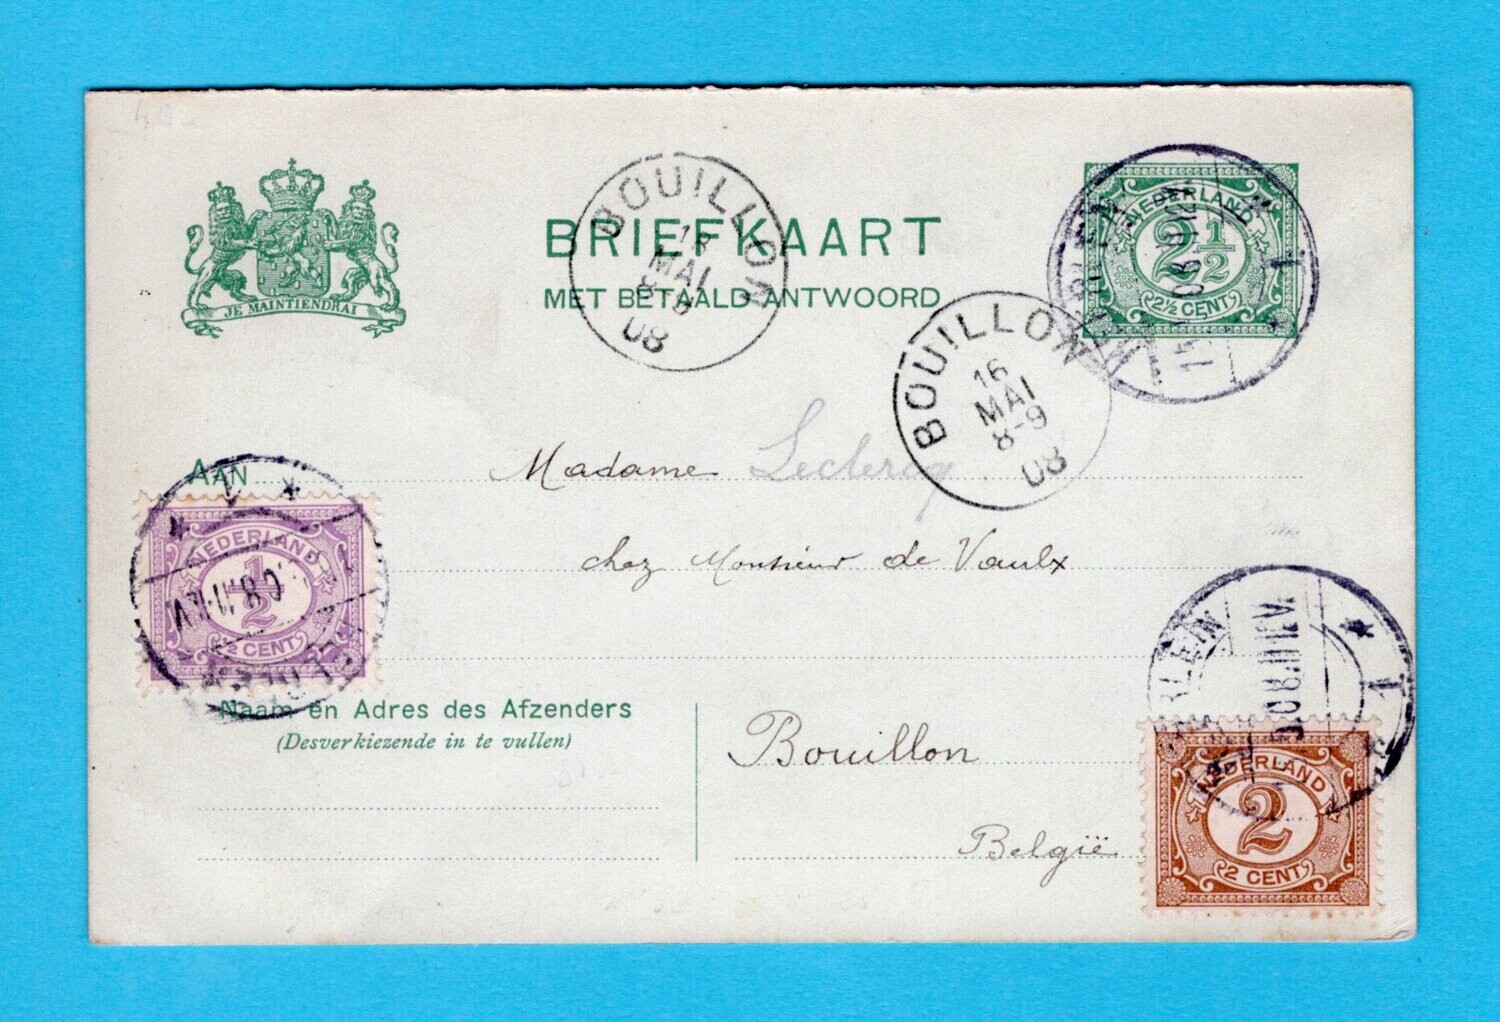 NEDERLAND briefkaart met antwoord 1908 Heerlen - België en retour